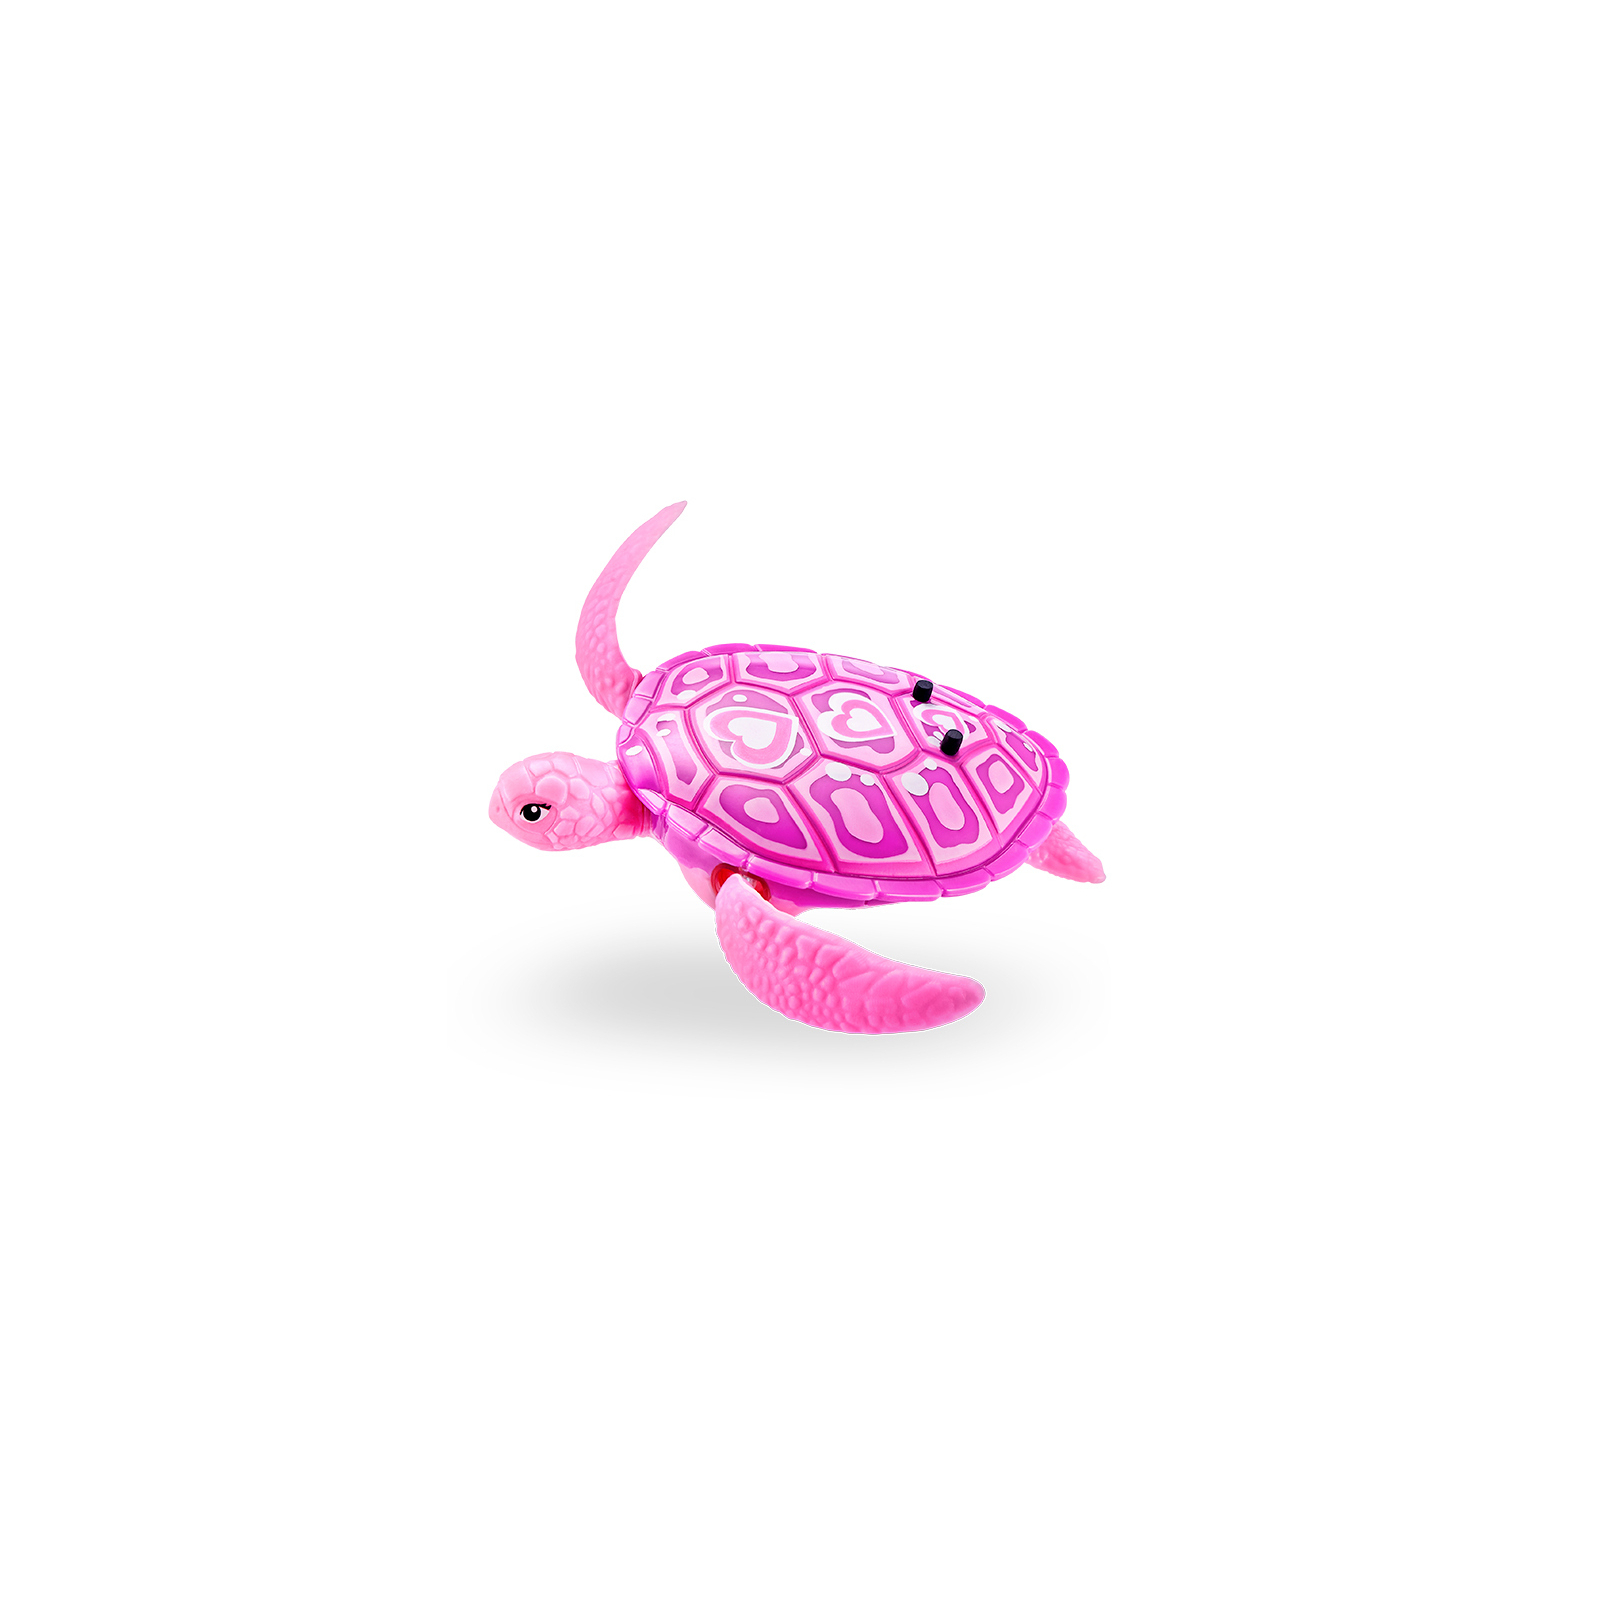 Интерактивная игрушка Pets & Robo Alive Робочерепаха (фиолетовая) (7192UQ1-2)